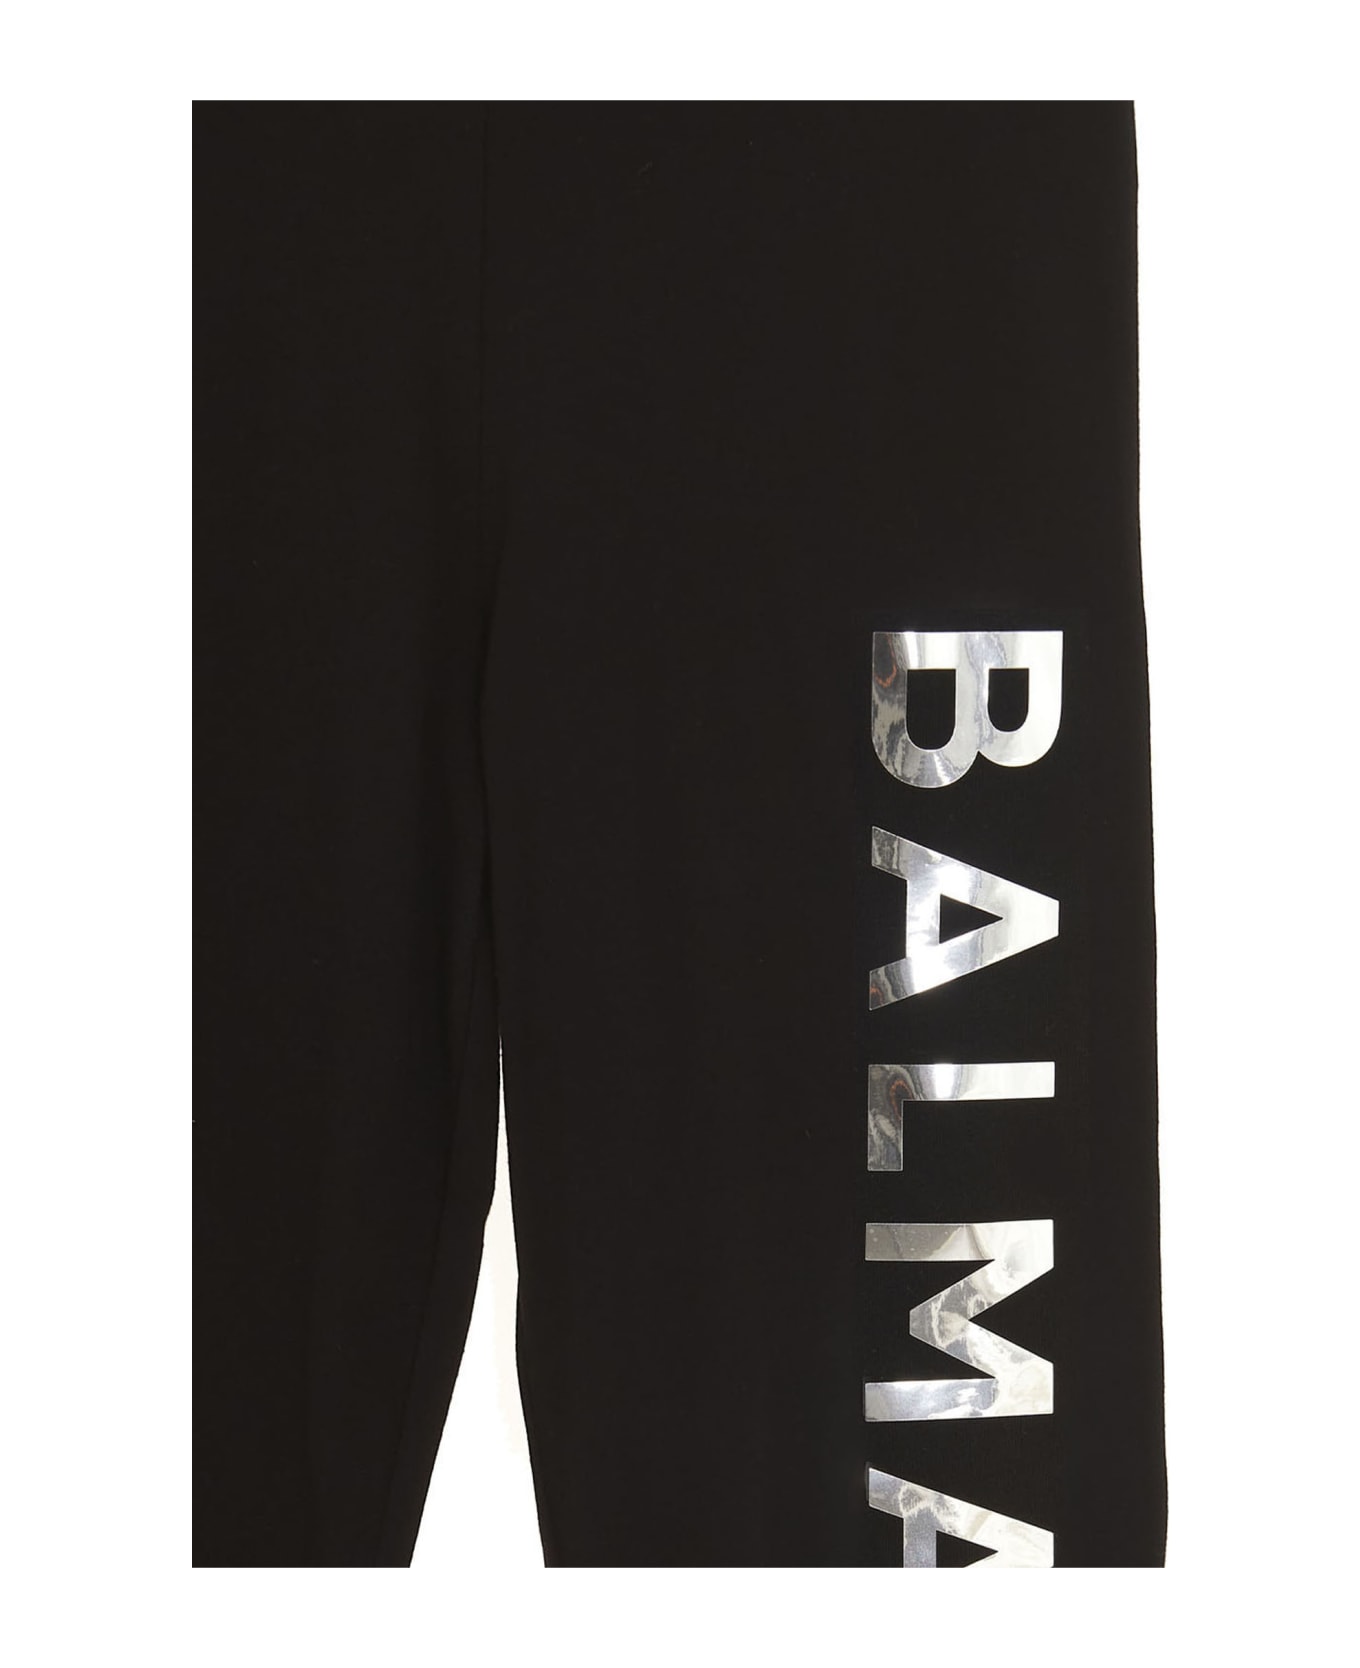 Balmain Logo Leggings - Black   ボトムス